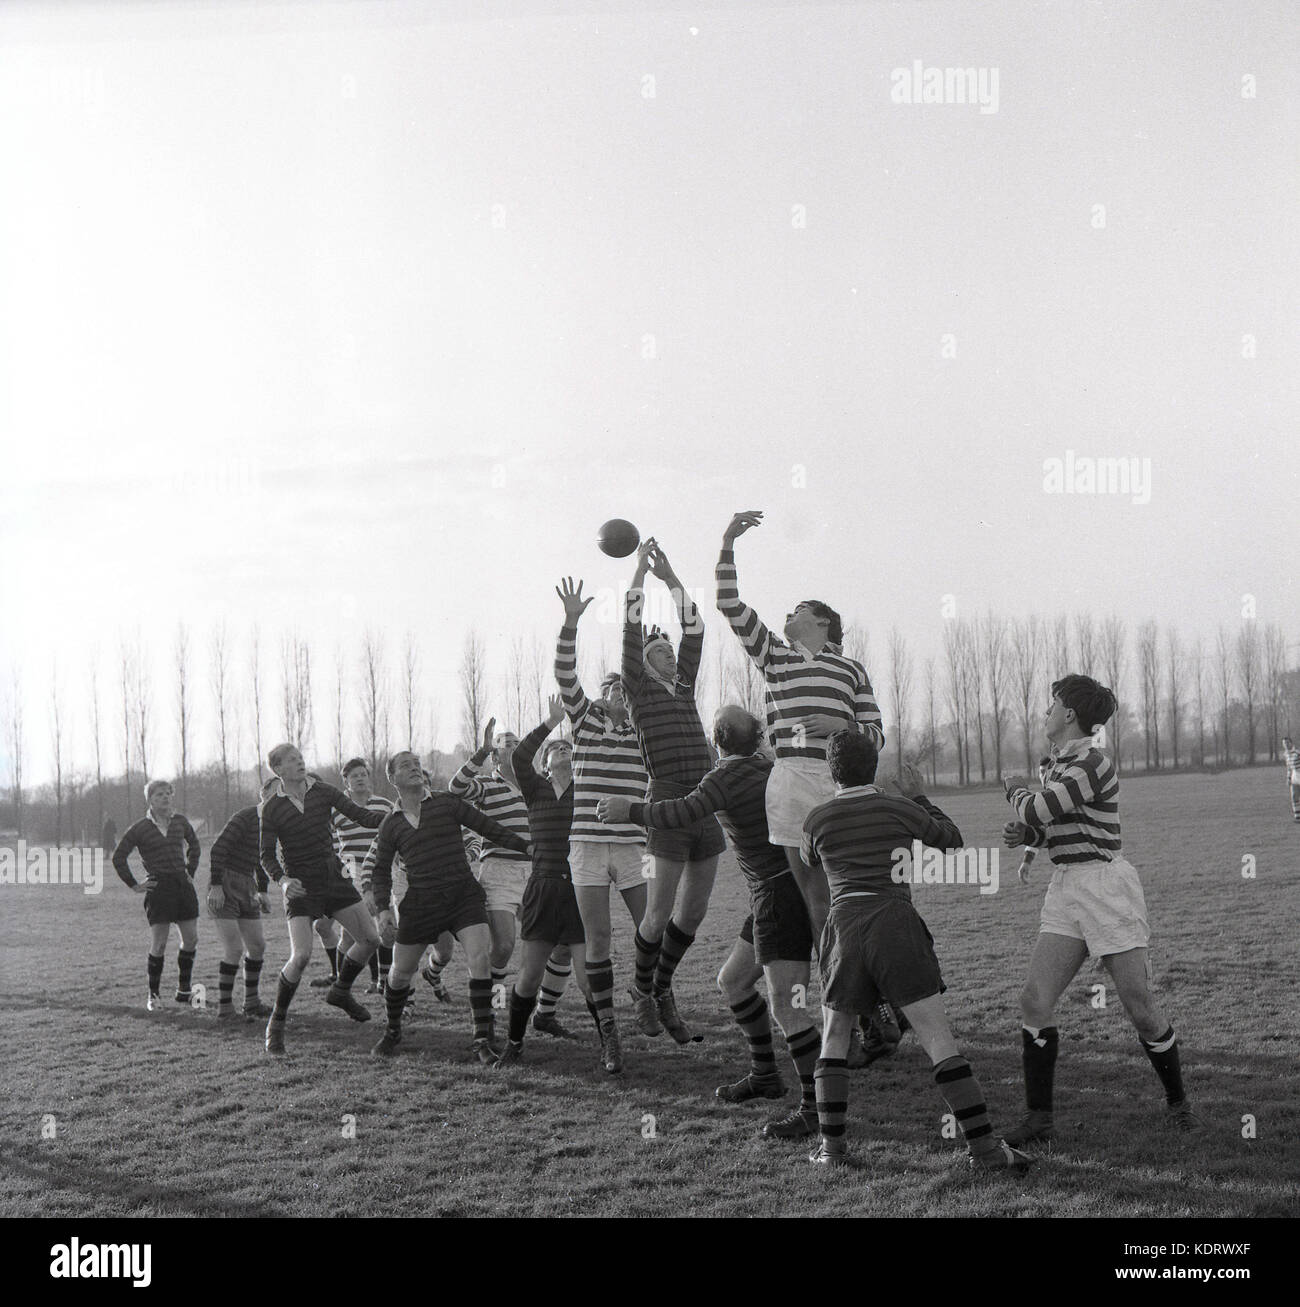 1960, histórica, la imagen muestra un rugby amateur match y la reenvía los dos equipos compitiendo por el balón en una salida de línea, Inglaterra, Reino Unido. Foto de stock